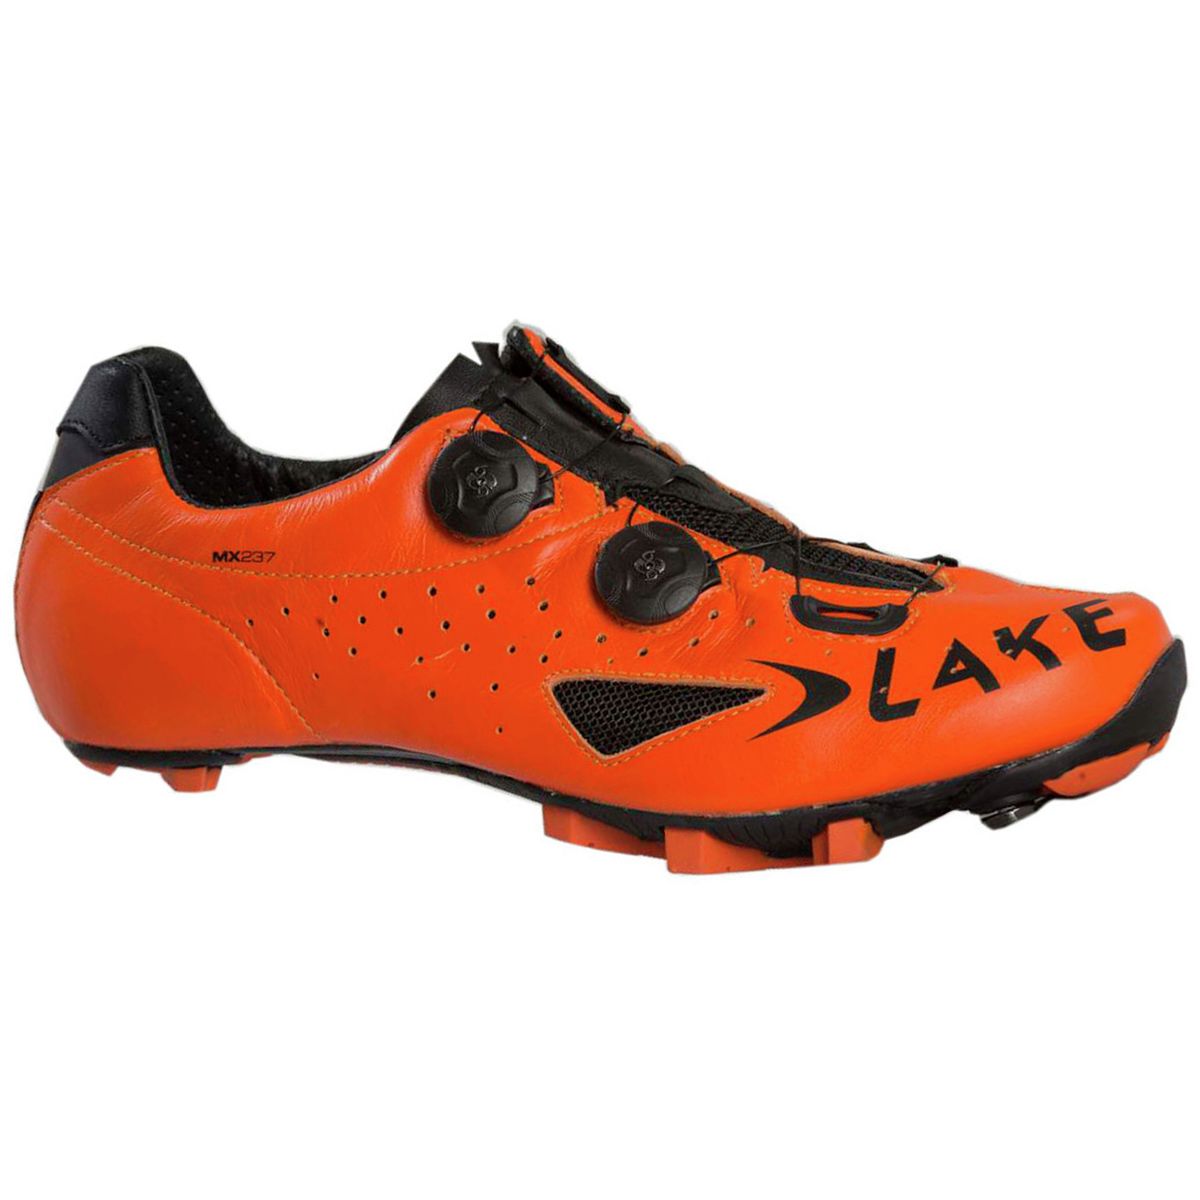 Lake MX237 Cycling Shoe Men's